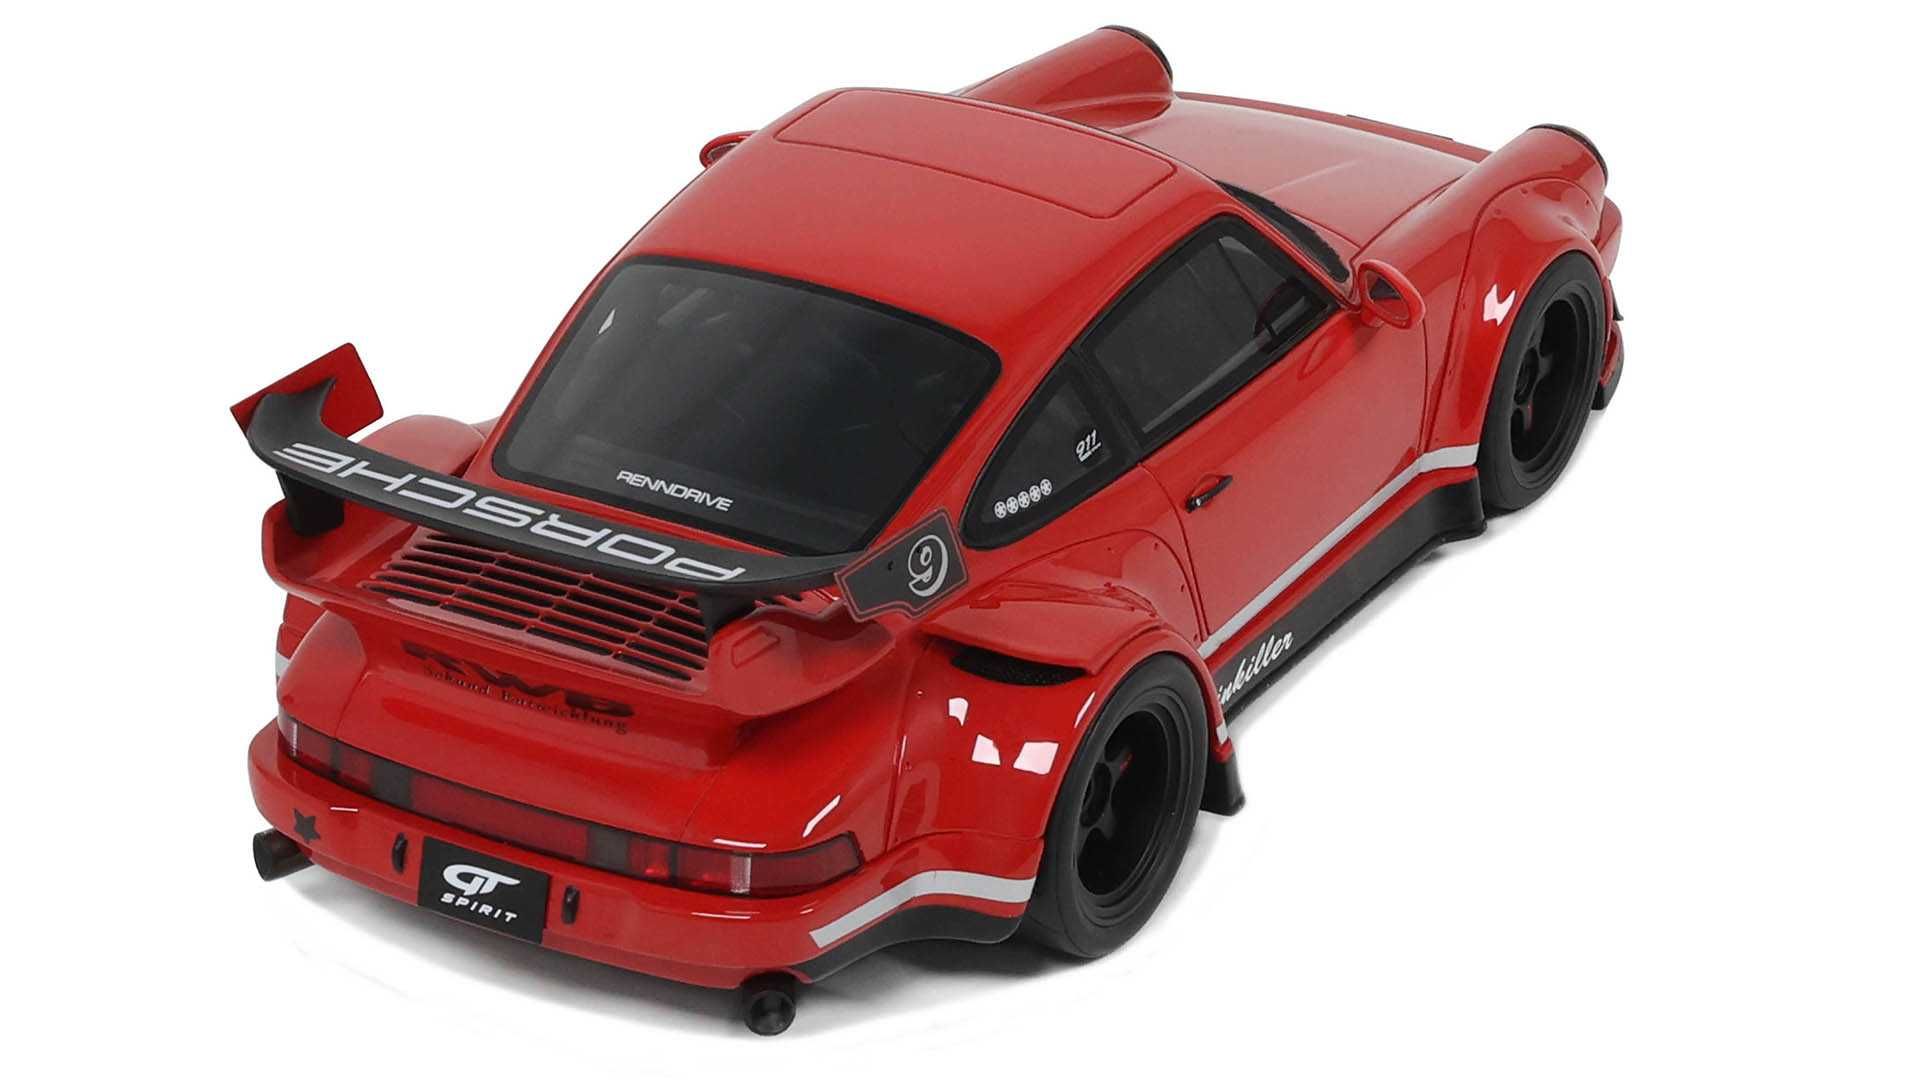 1:18 GT Spirit Porsche 911 (964) RWB Rauh-Welt Body Kit Painkiller red